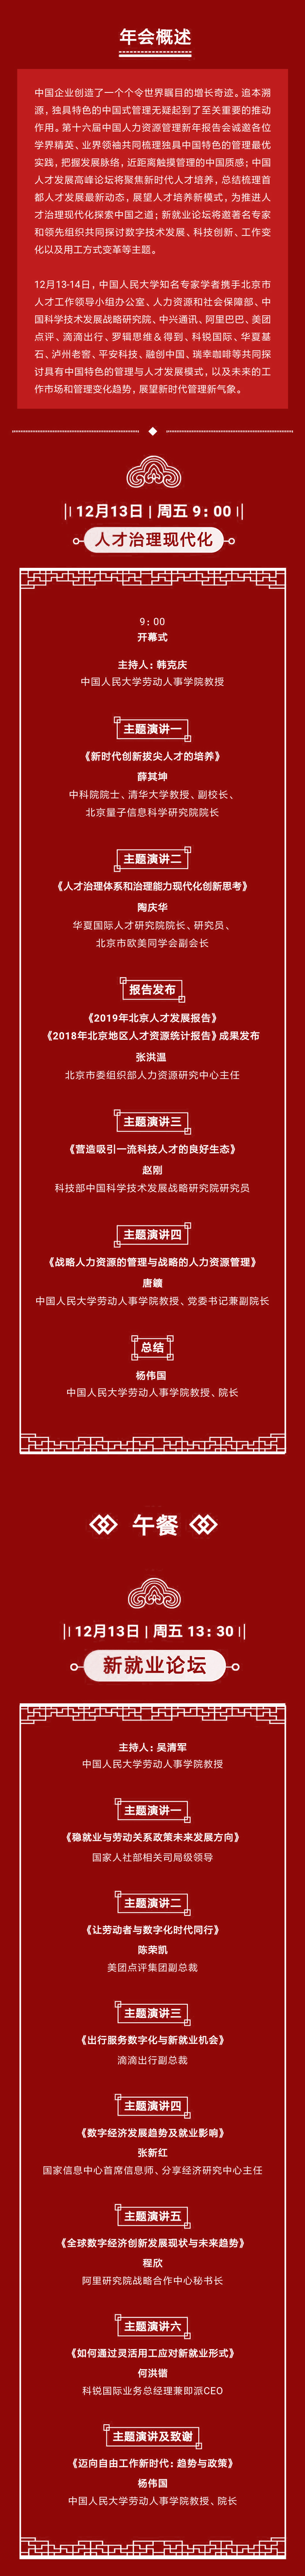 中国人力资源管理新年报告会_01.jpg